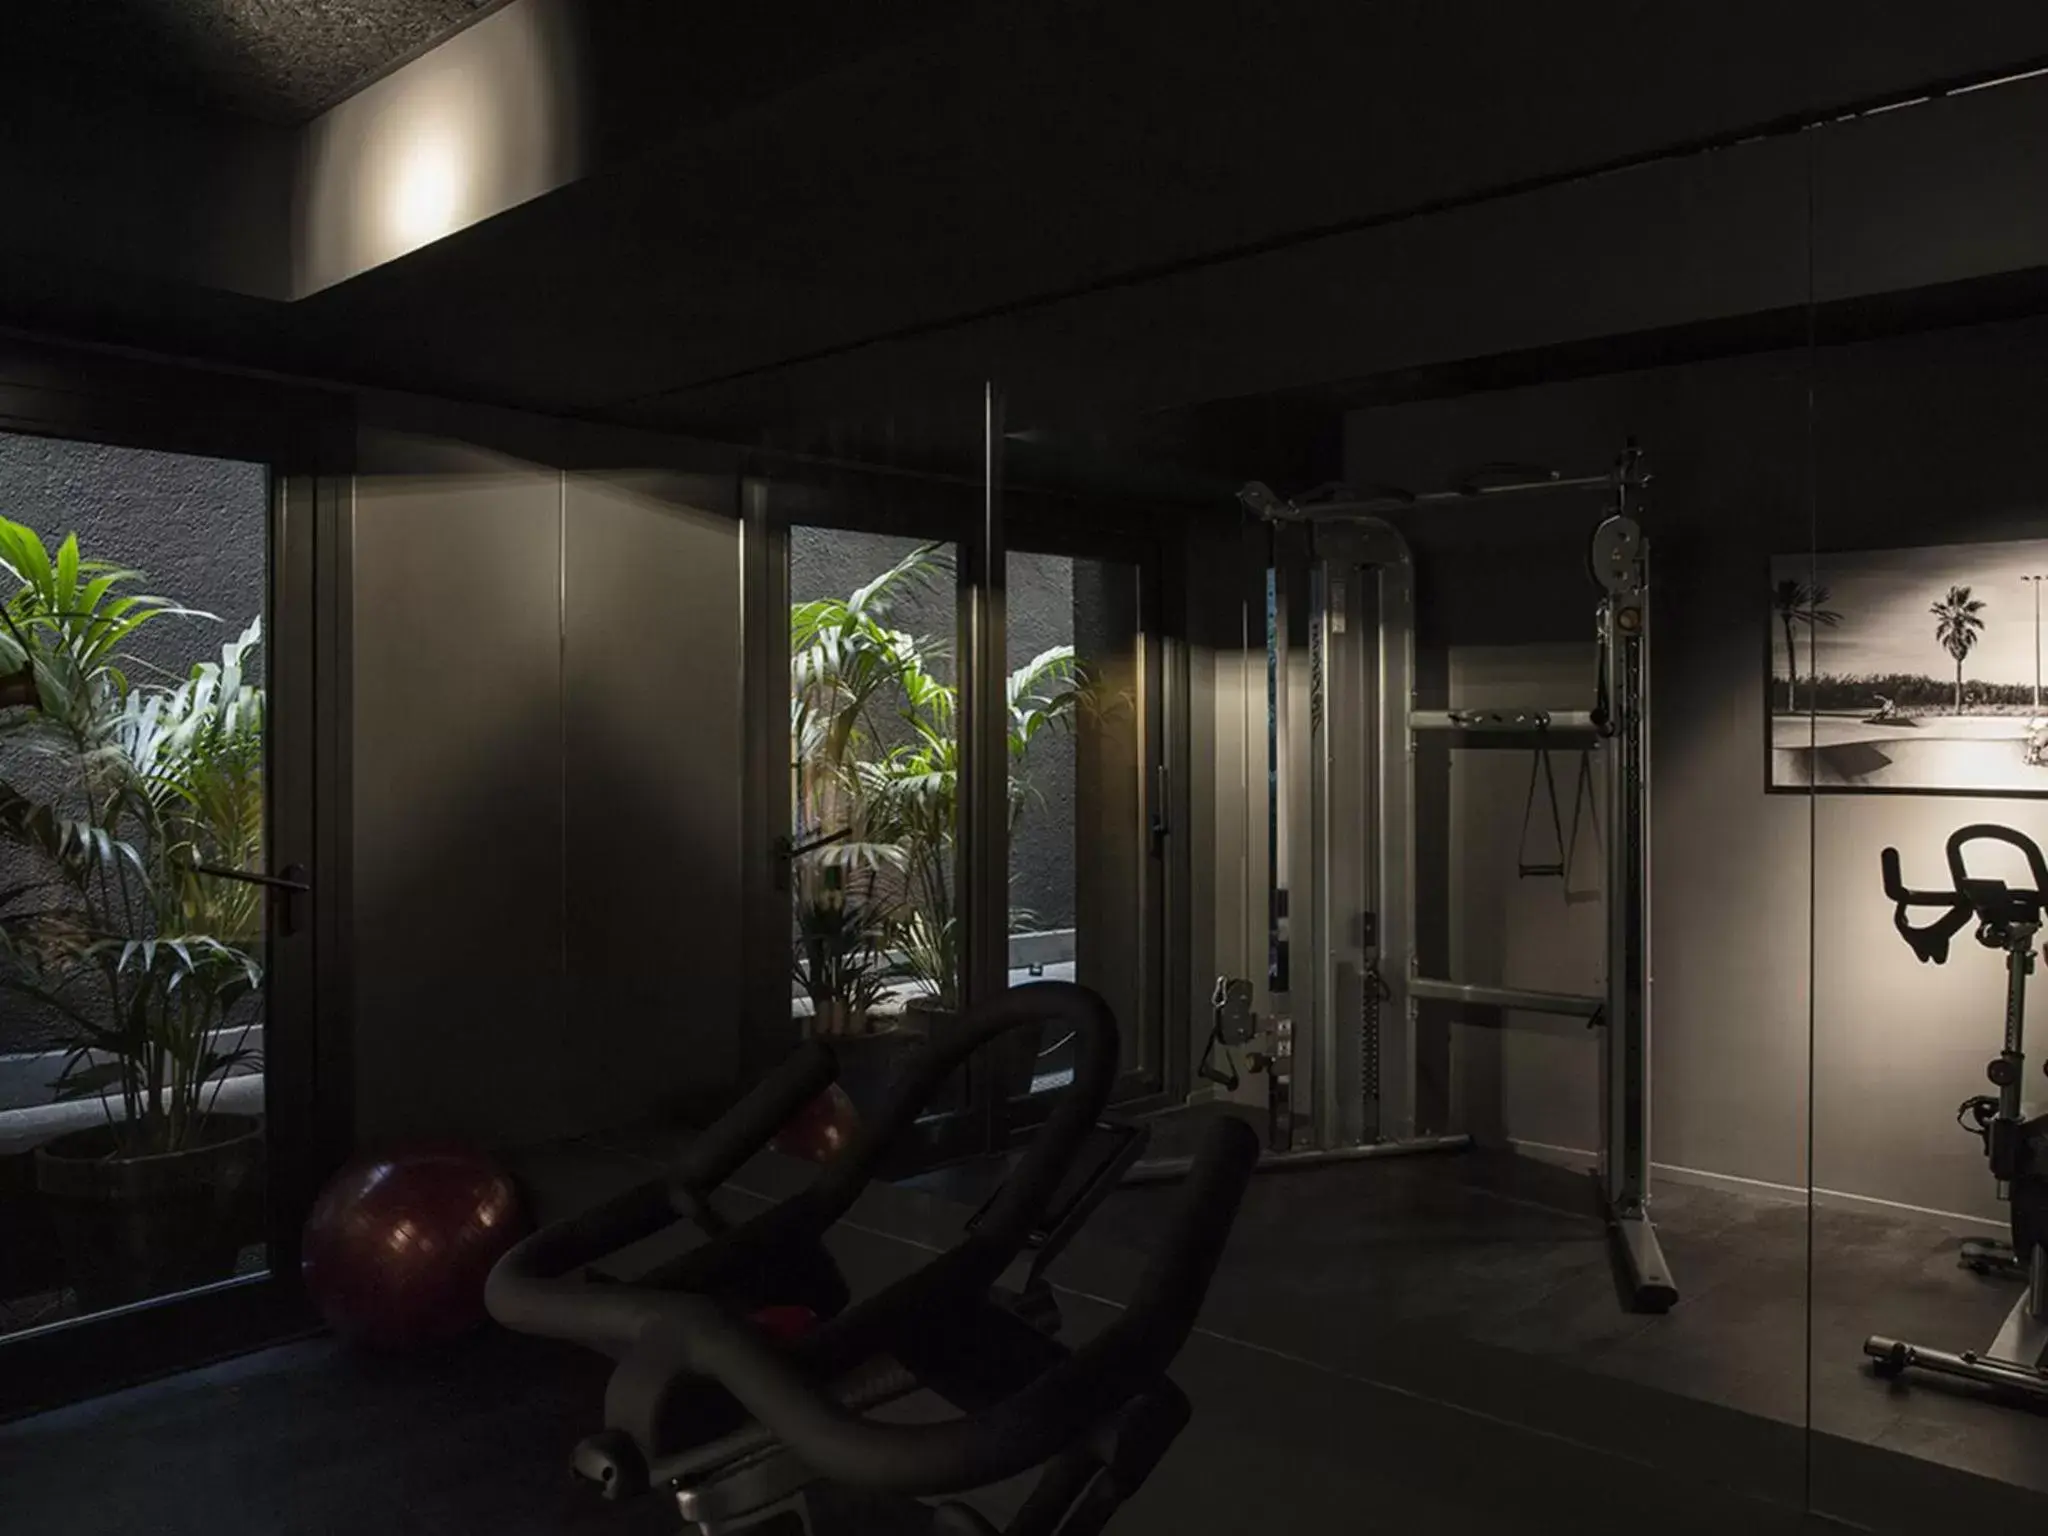 Fitness centre/facilities, Fitness Center/Facilities in Yurbban Trafalgar Hotel